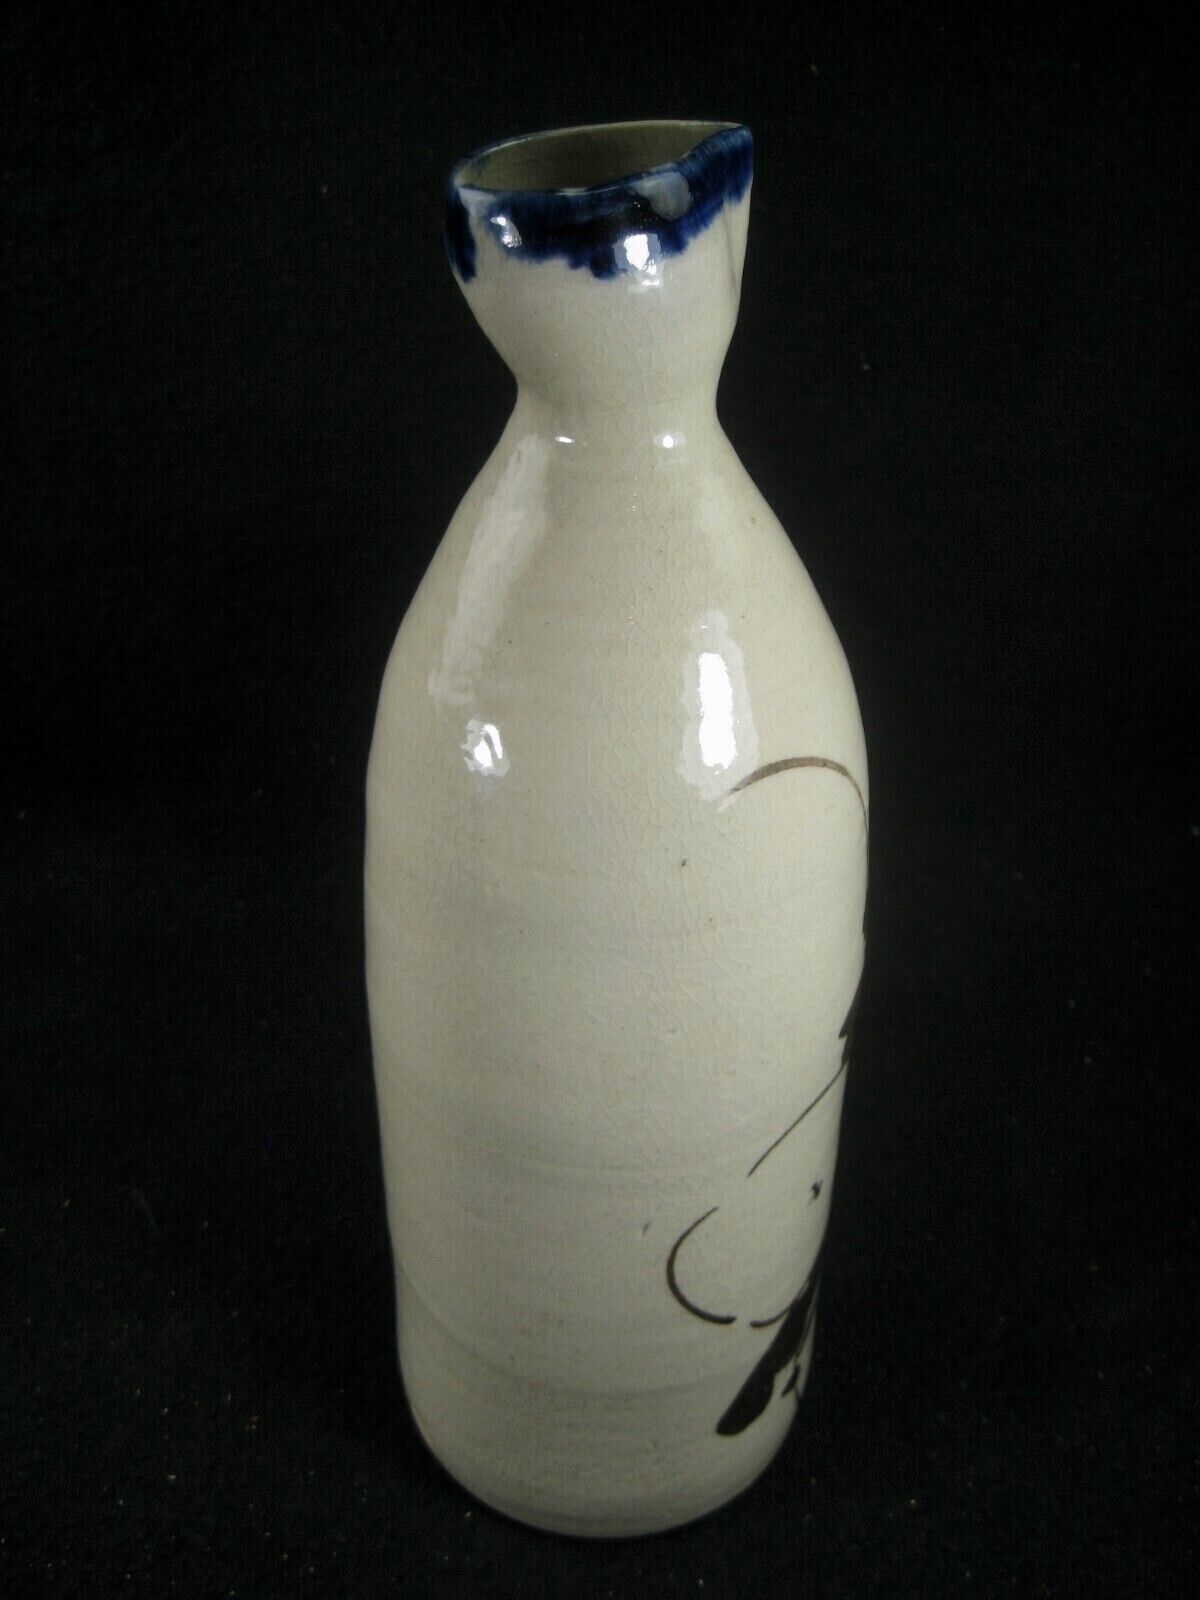 Antique Japanese Late Meiji Era (C.1900) Ceramic Tokkuri Sake Bottle / Vase